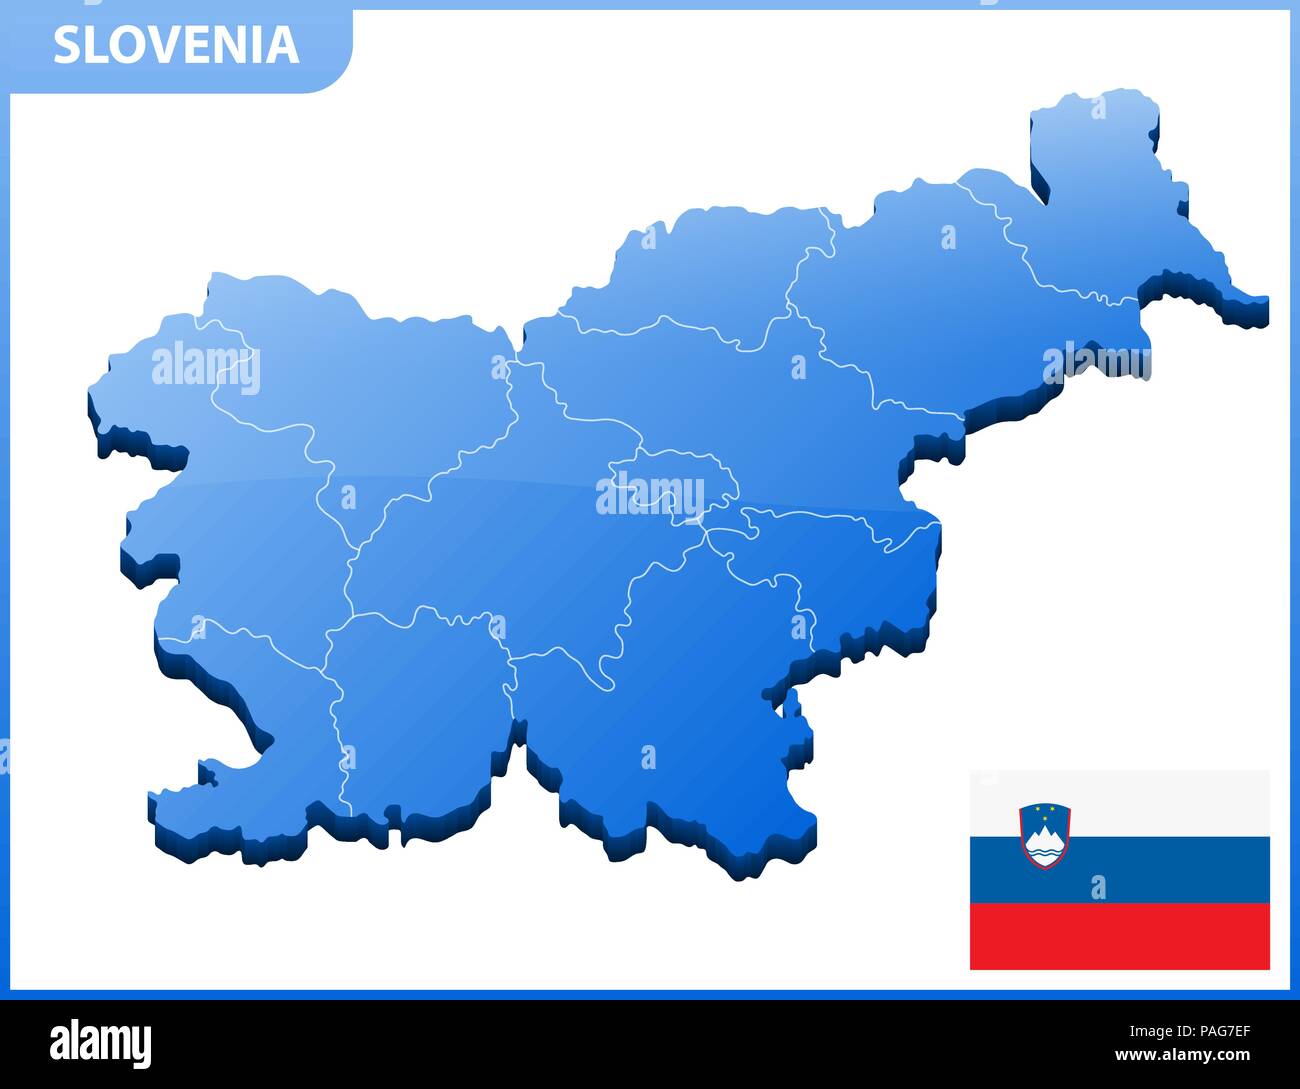 Altamente dettagliata mappa tridimensionale della Slovenia con regioni di confine Illustrazione Vettoriale